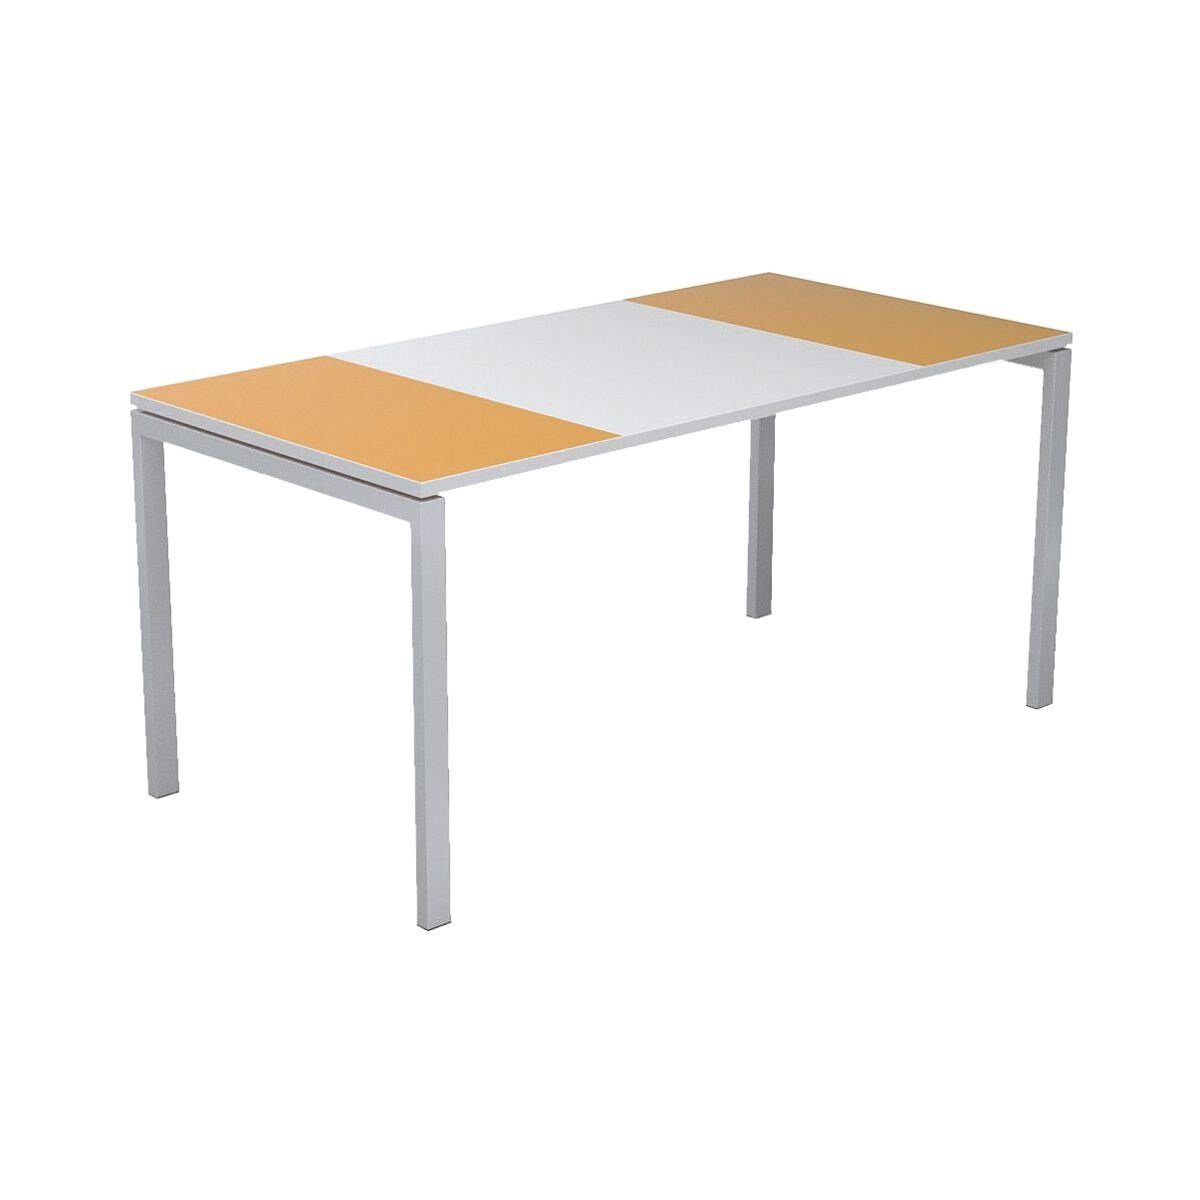 EASYOFFICE Schreibtisch easyOffice, mit farbigen Außenflächen und ABS-Kanten weiß/orange